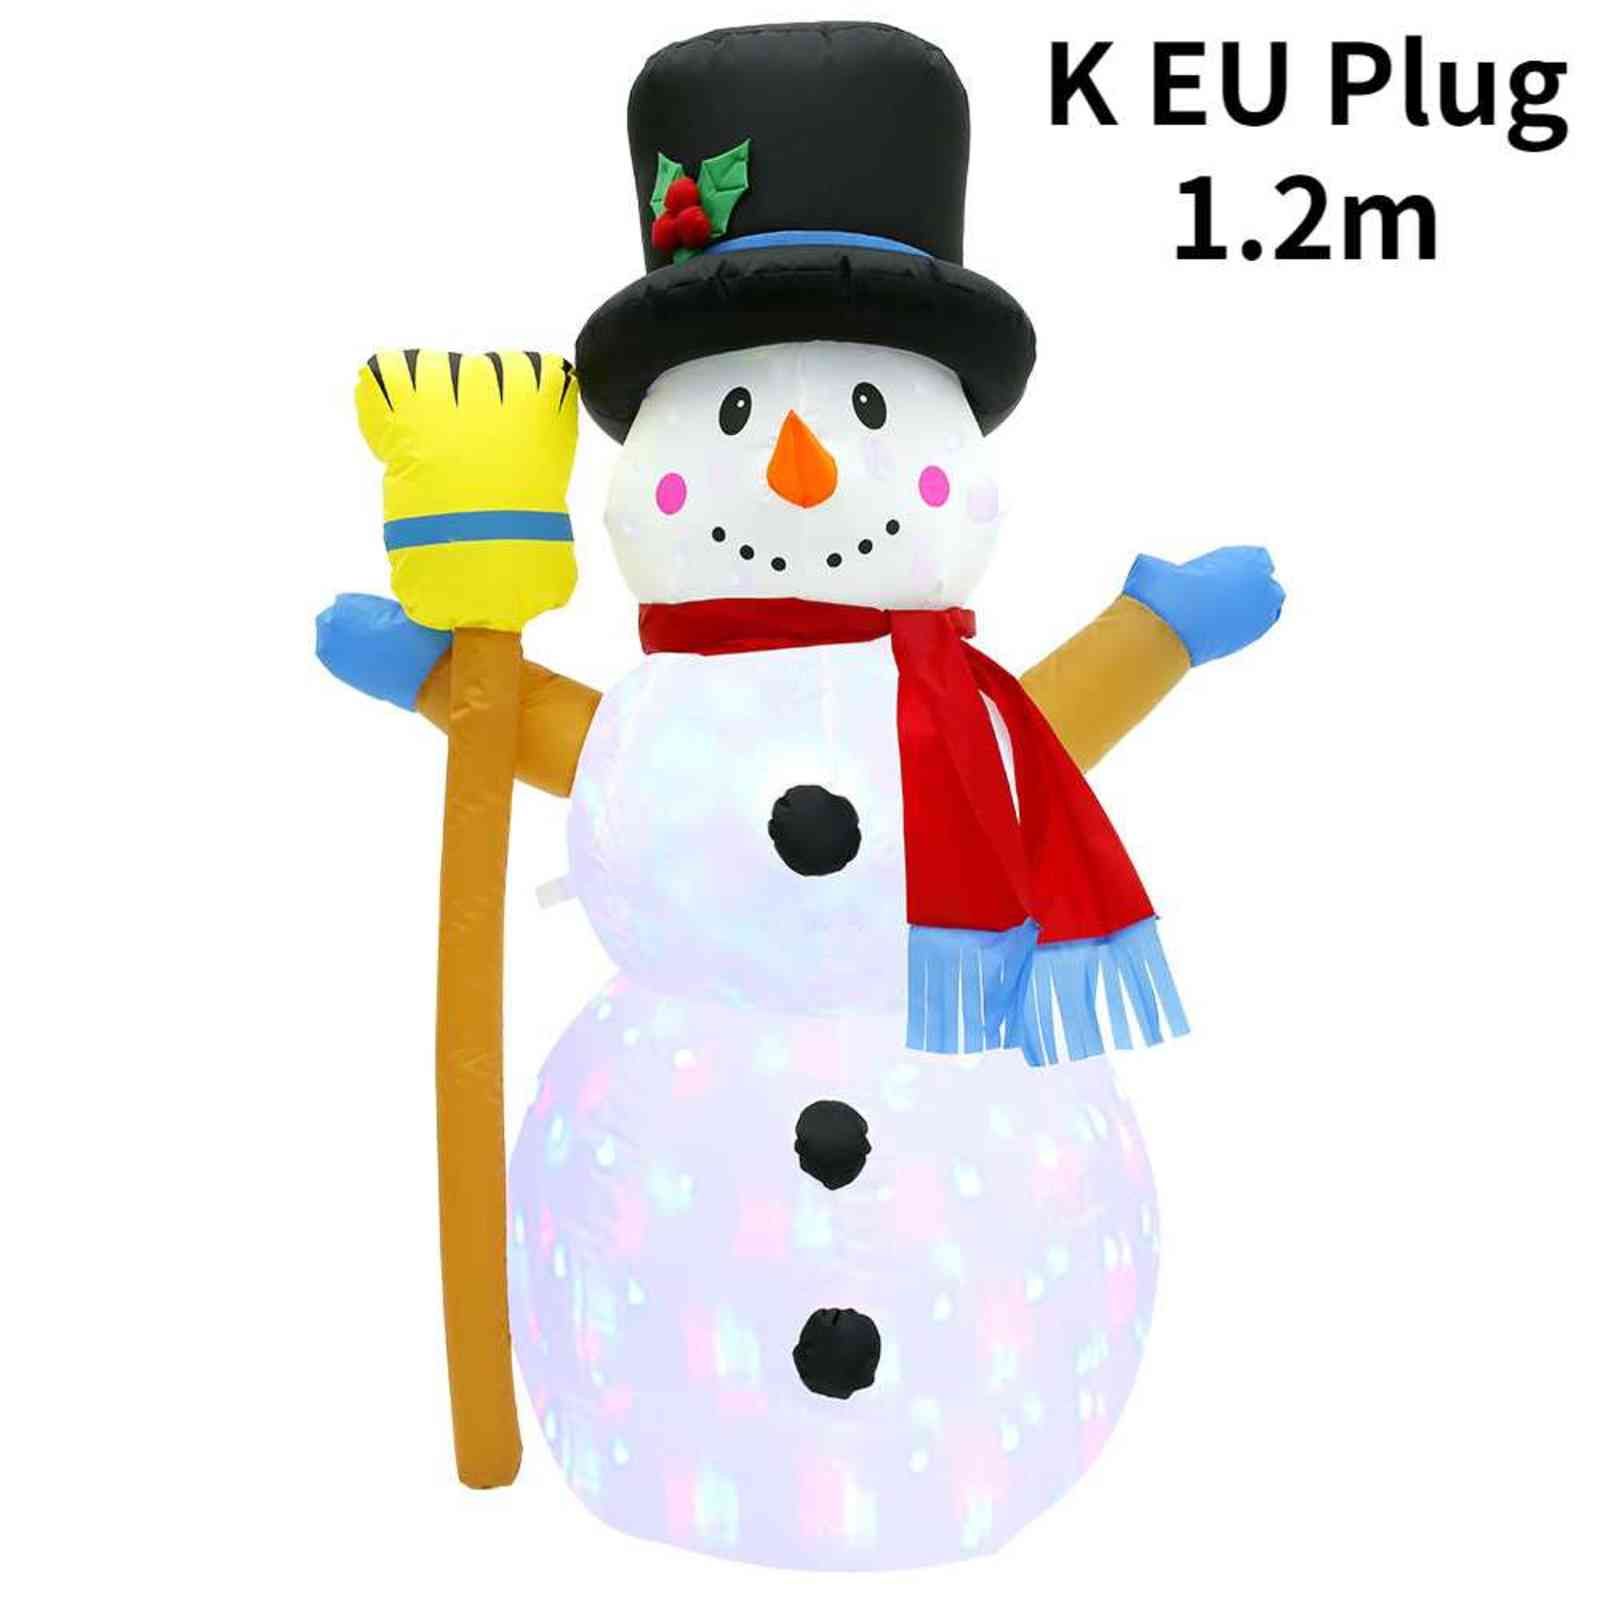 K EU-plug 1.2m